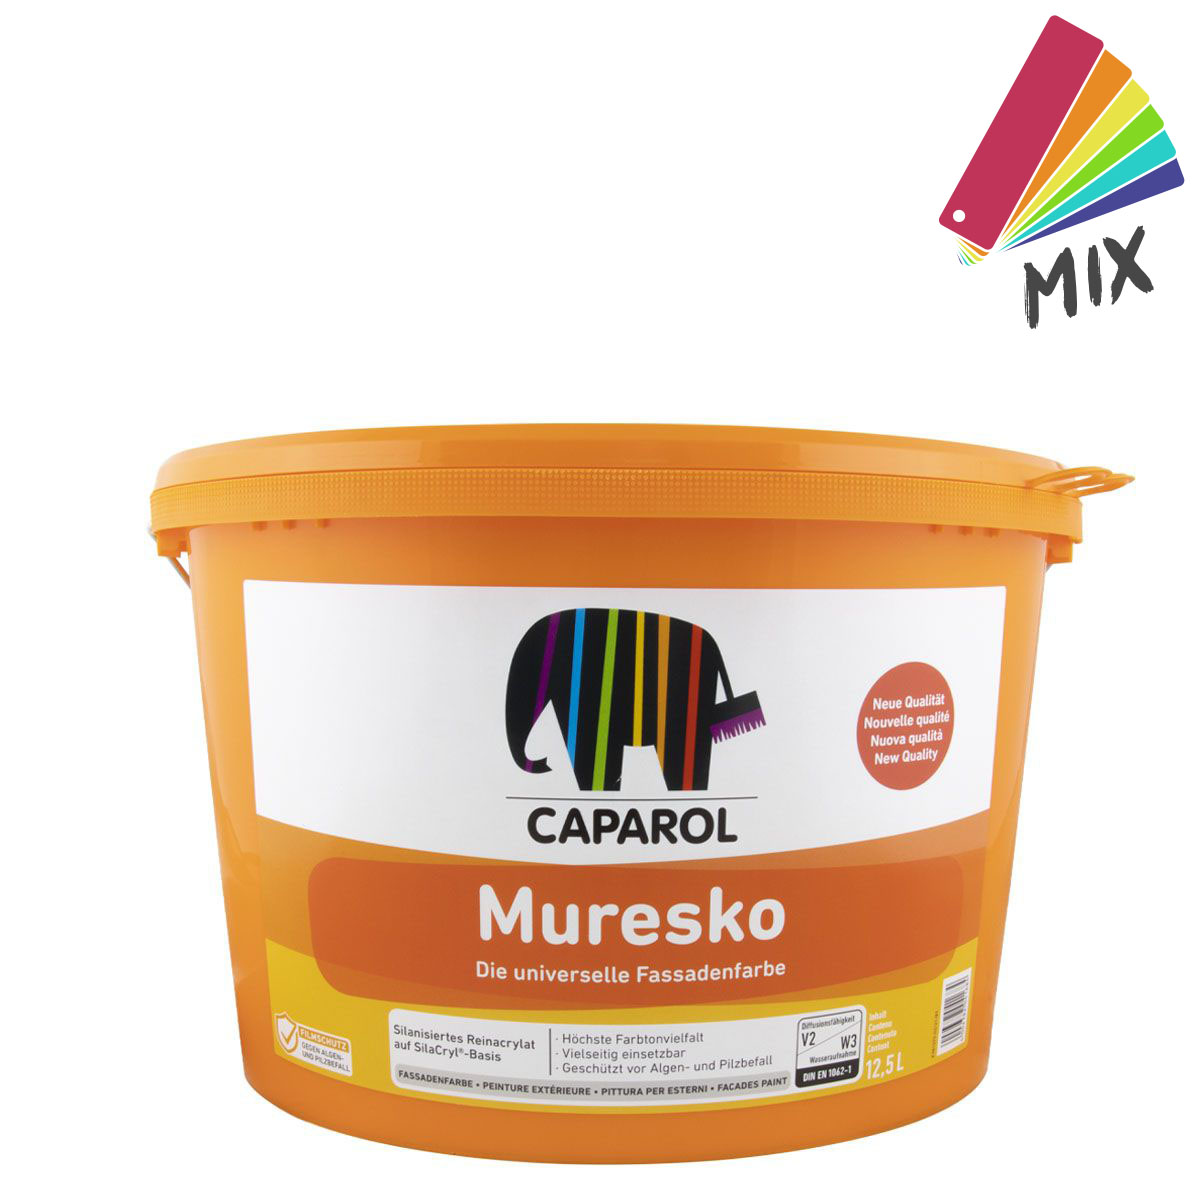 Caparol Muresko SilaCryl 12,5L MIX, PG A ,Siliconharz-Fassadenfarbe